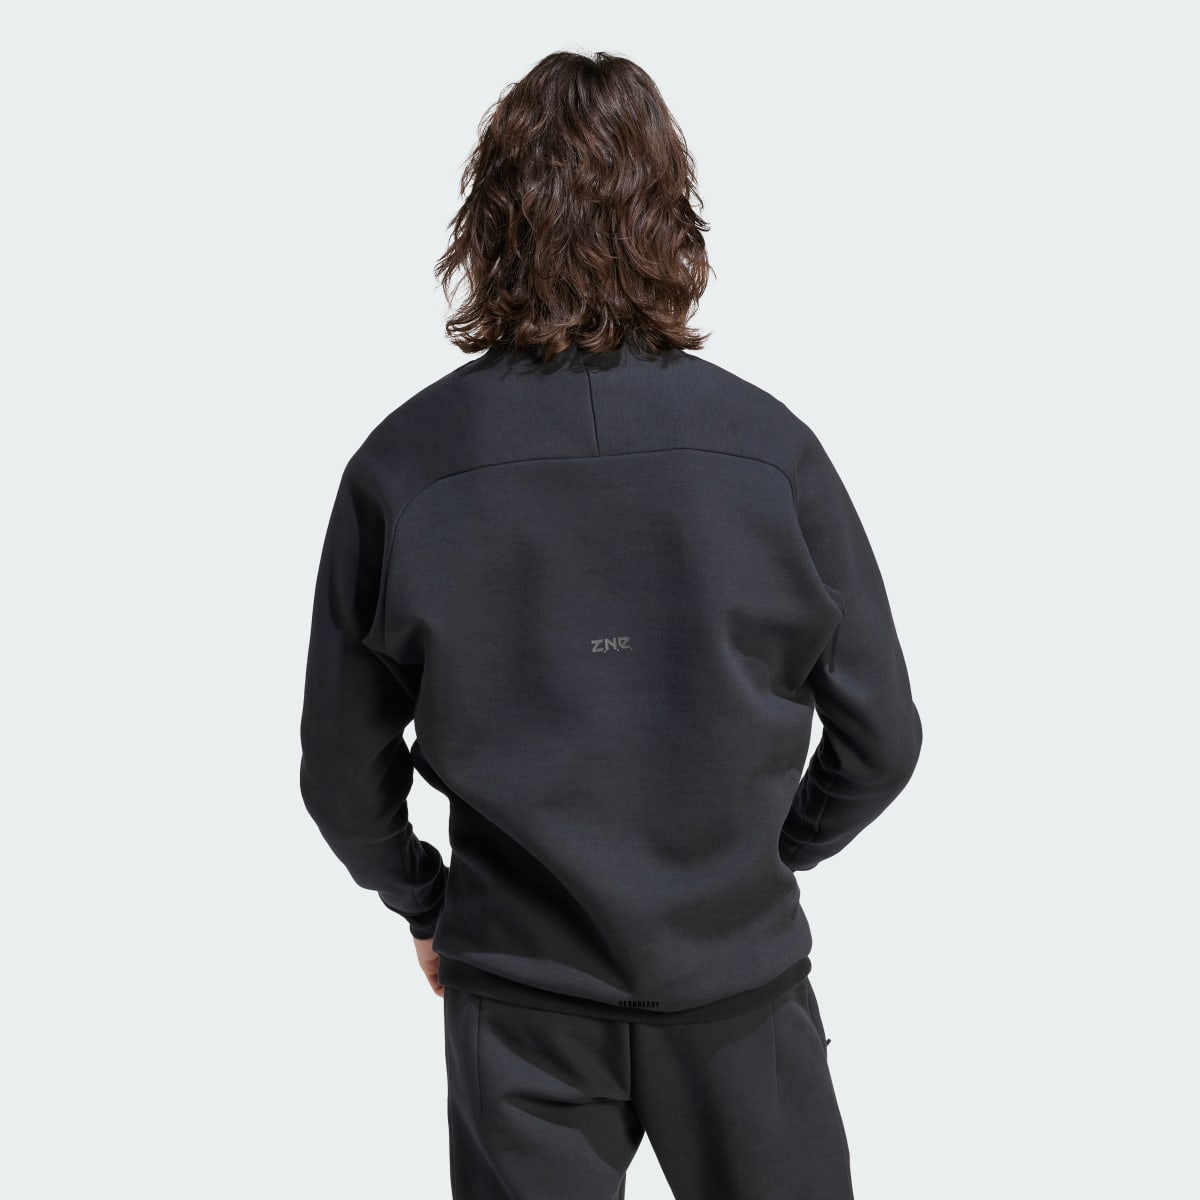 Adidas Z.N.E. Premium Sweatshirt. 4